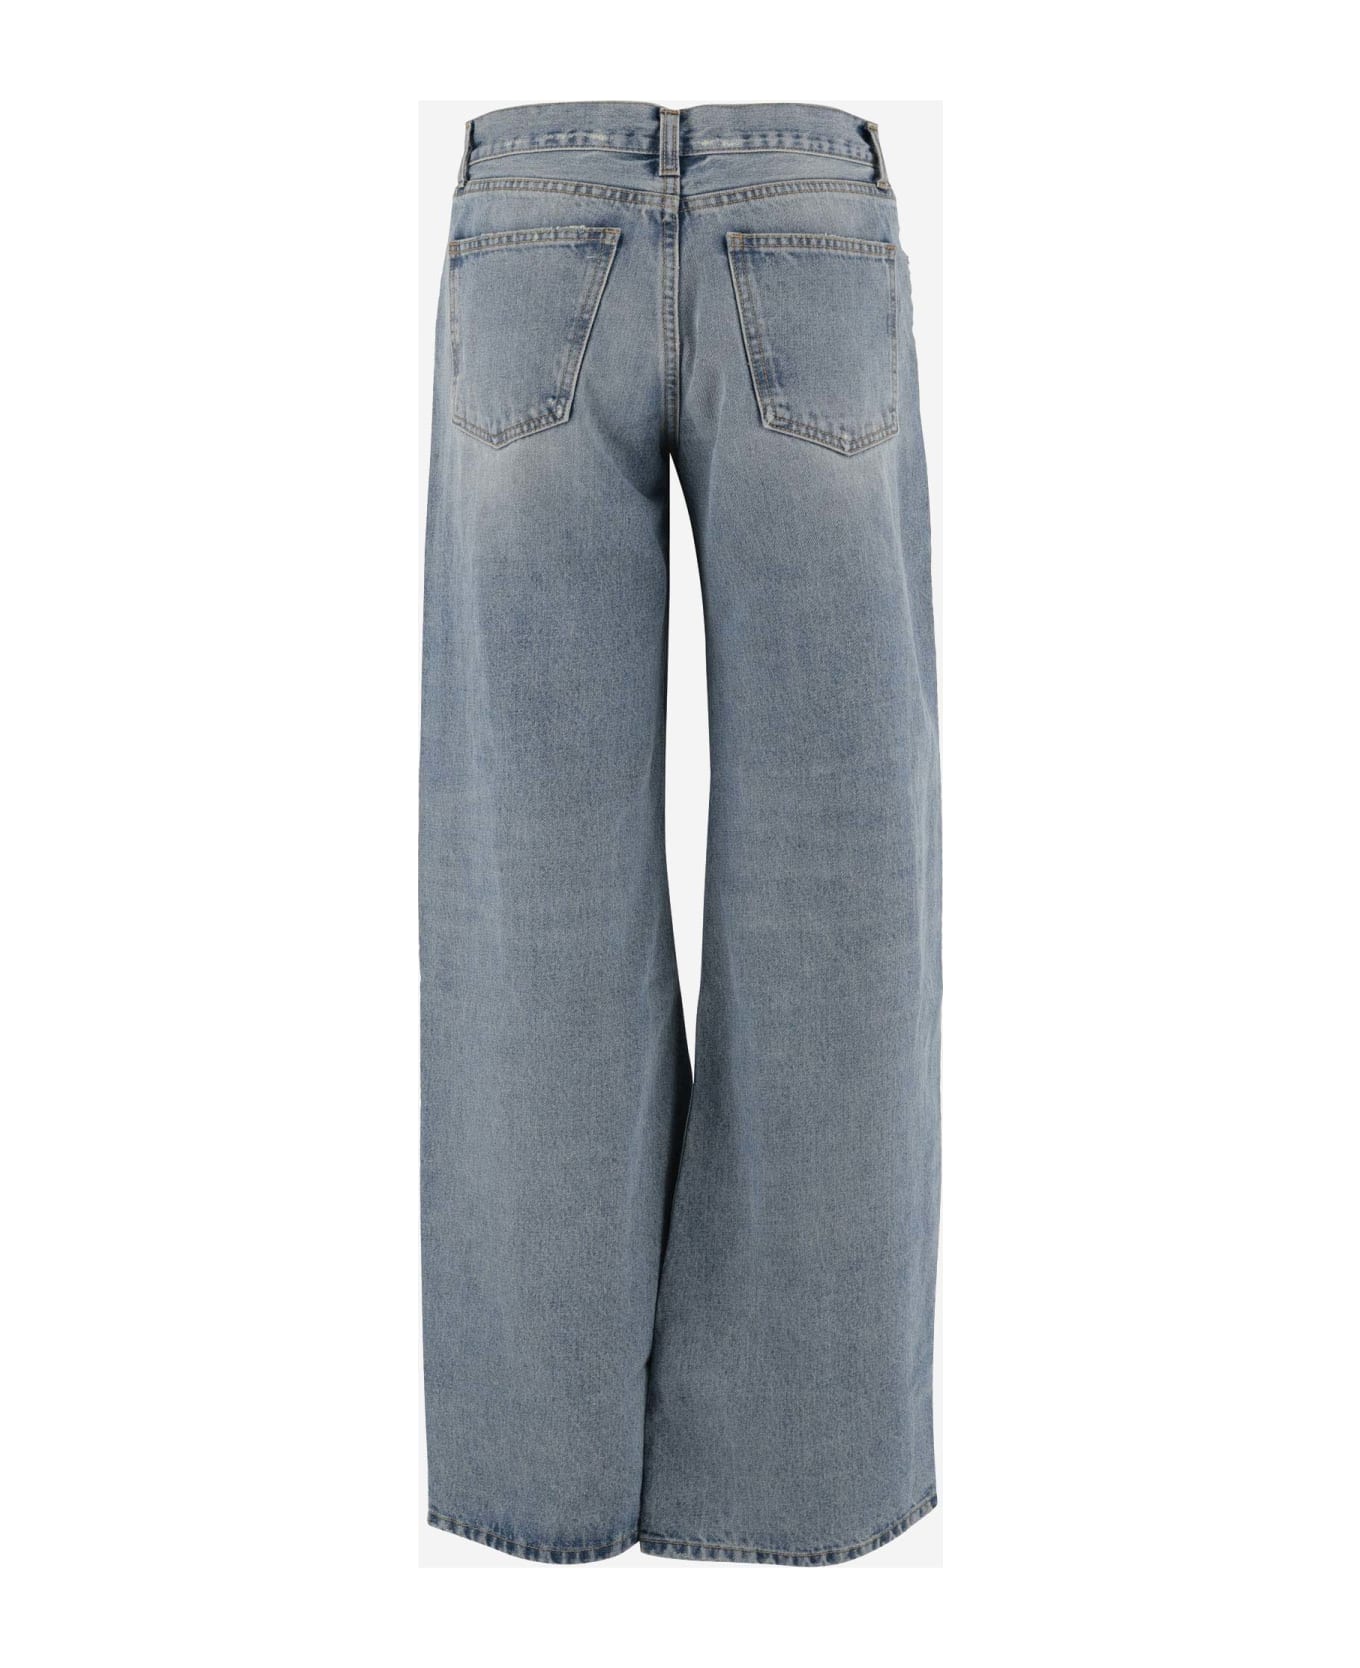 Armarium Cotton Denim Jeans - Denim